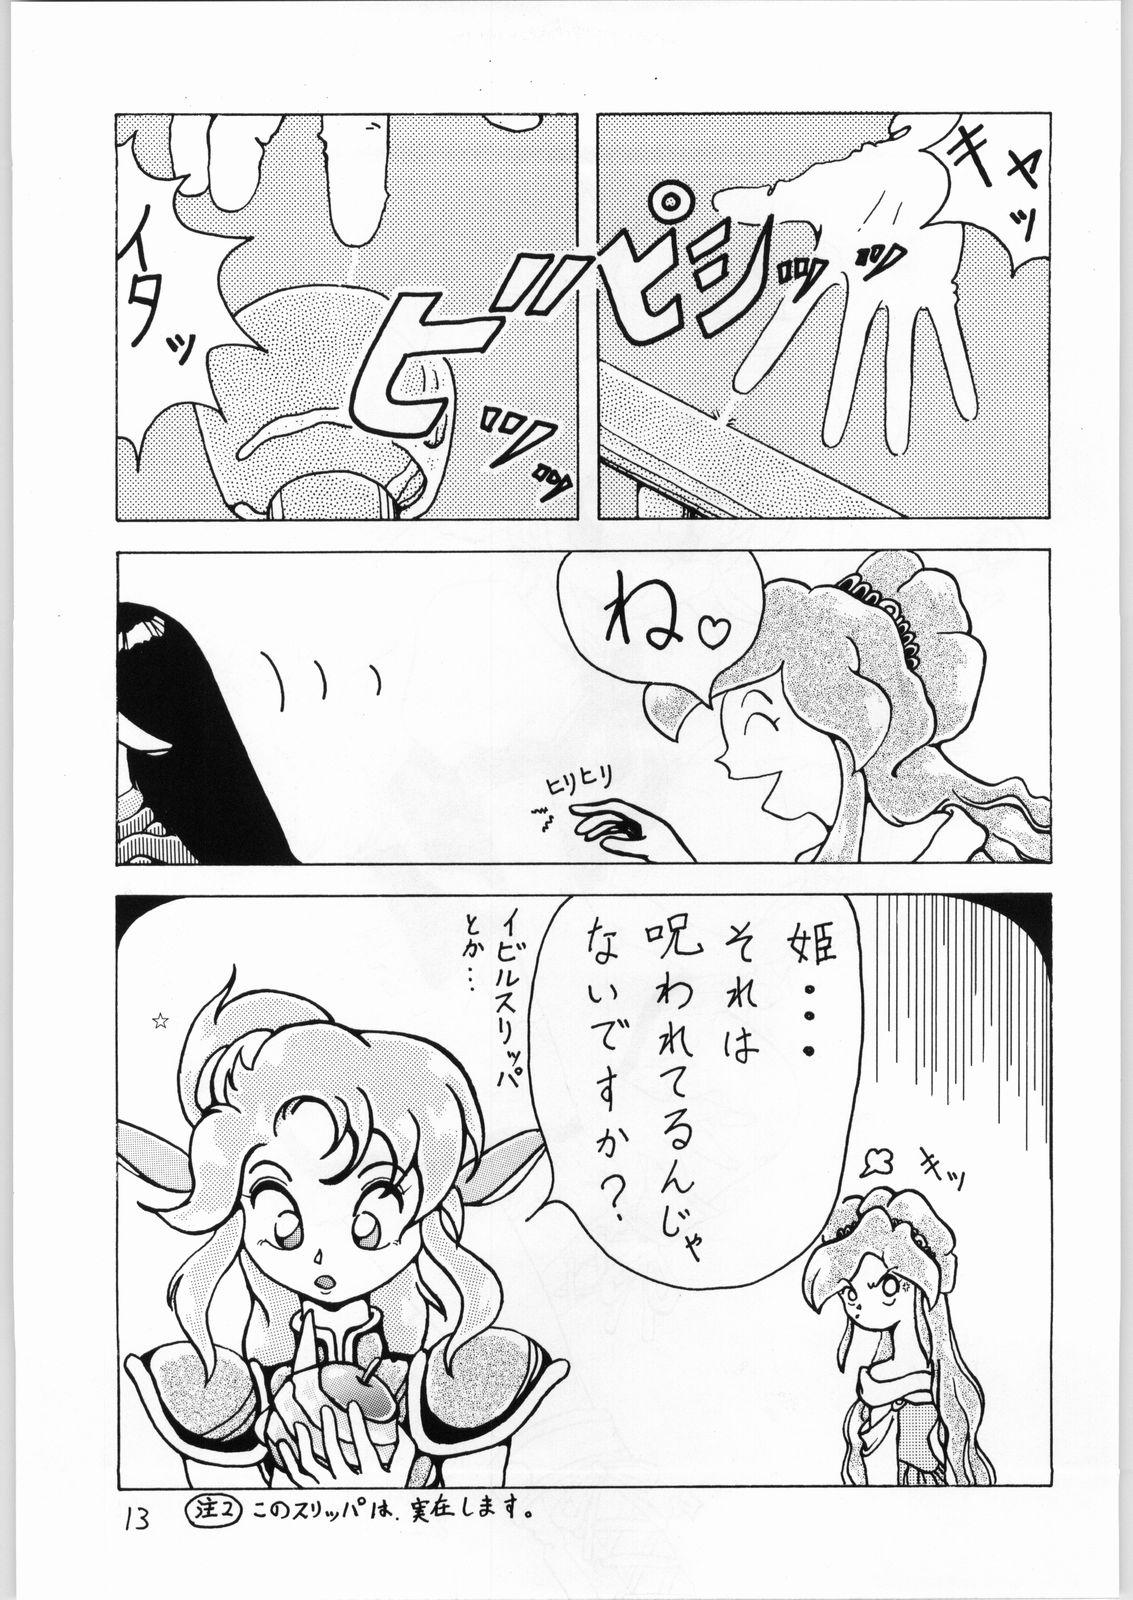 Lesbo Dance of Princess 3 - Sailor moon Tenchi muyo Akazukin cha cha Minky momo Ng knight lamune and 40 Hot - Page 12